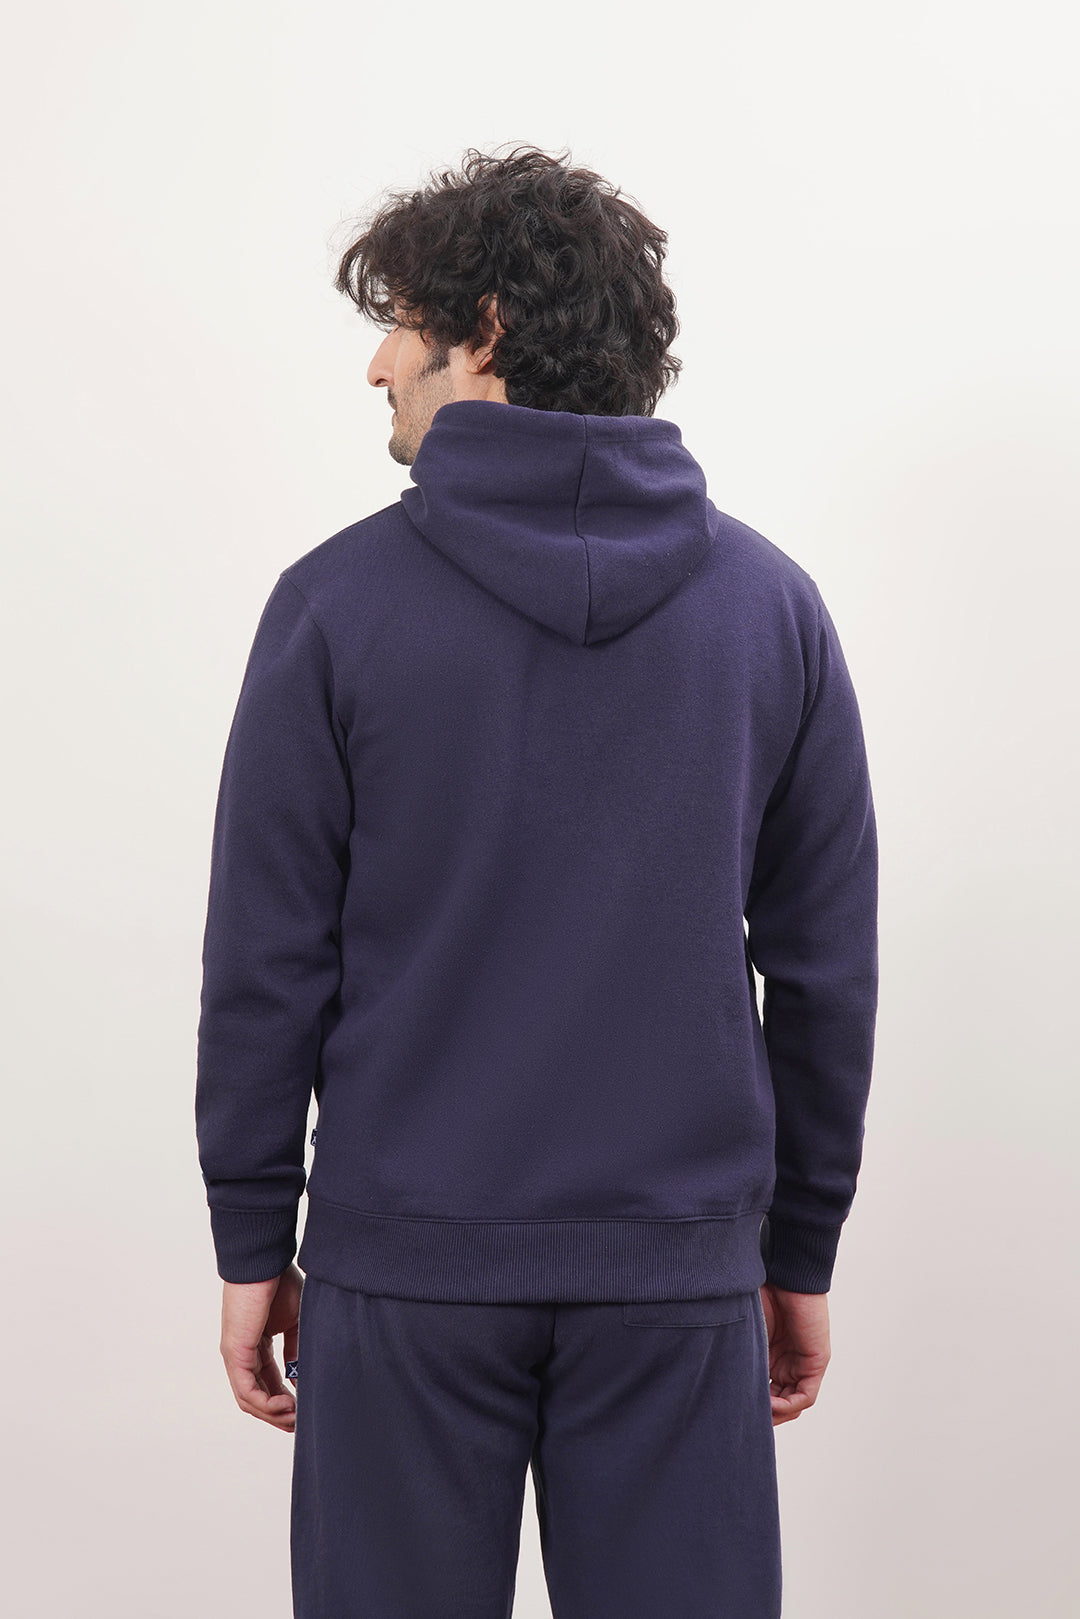 Men's Fleece Paneled Jumper With Embroidered Emblem